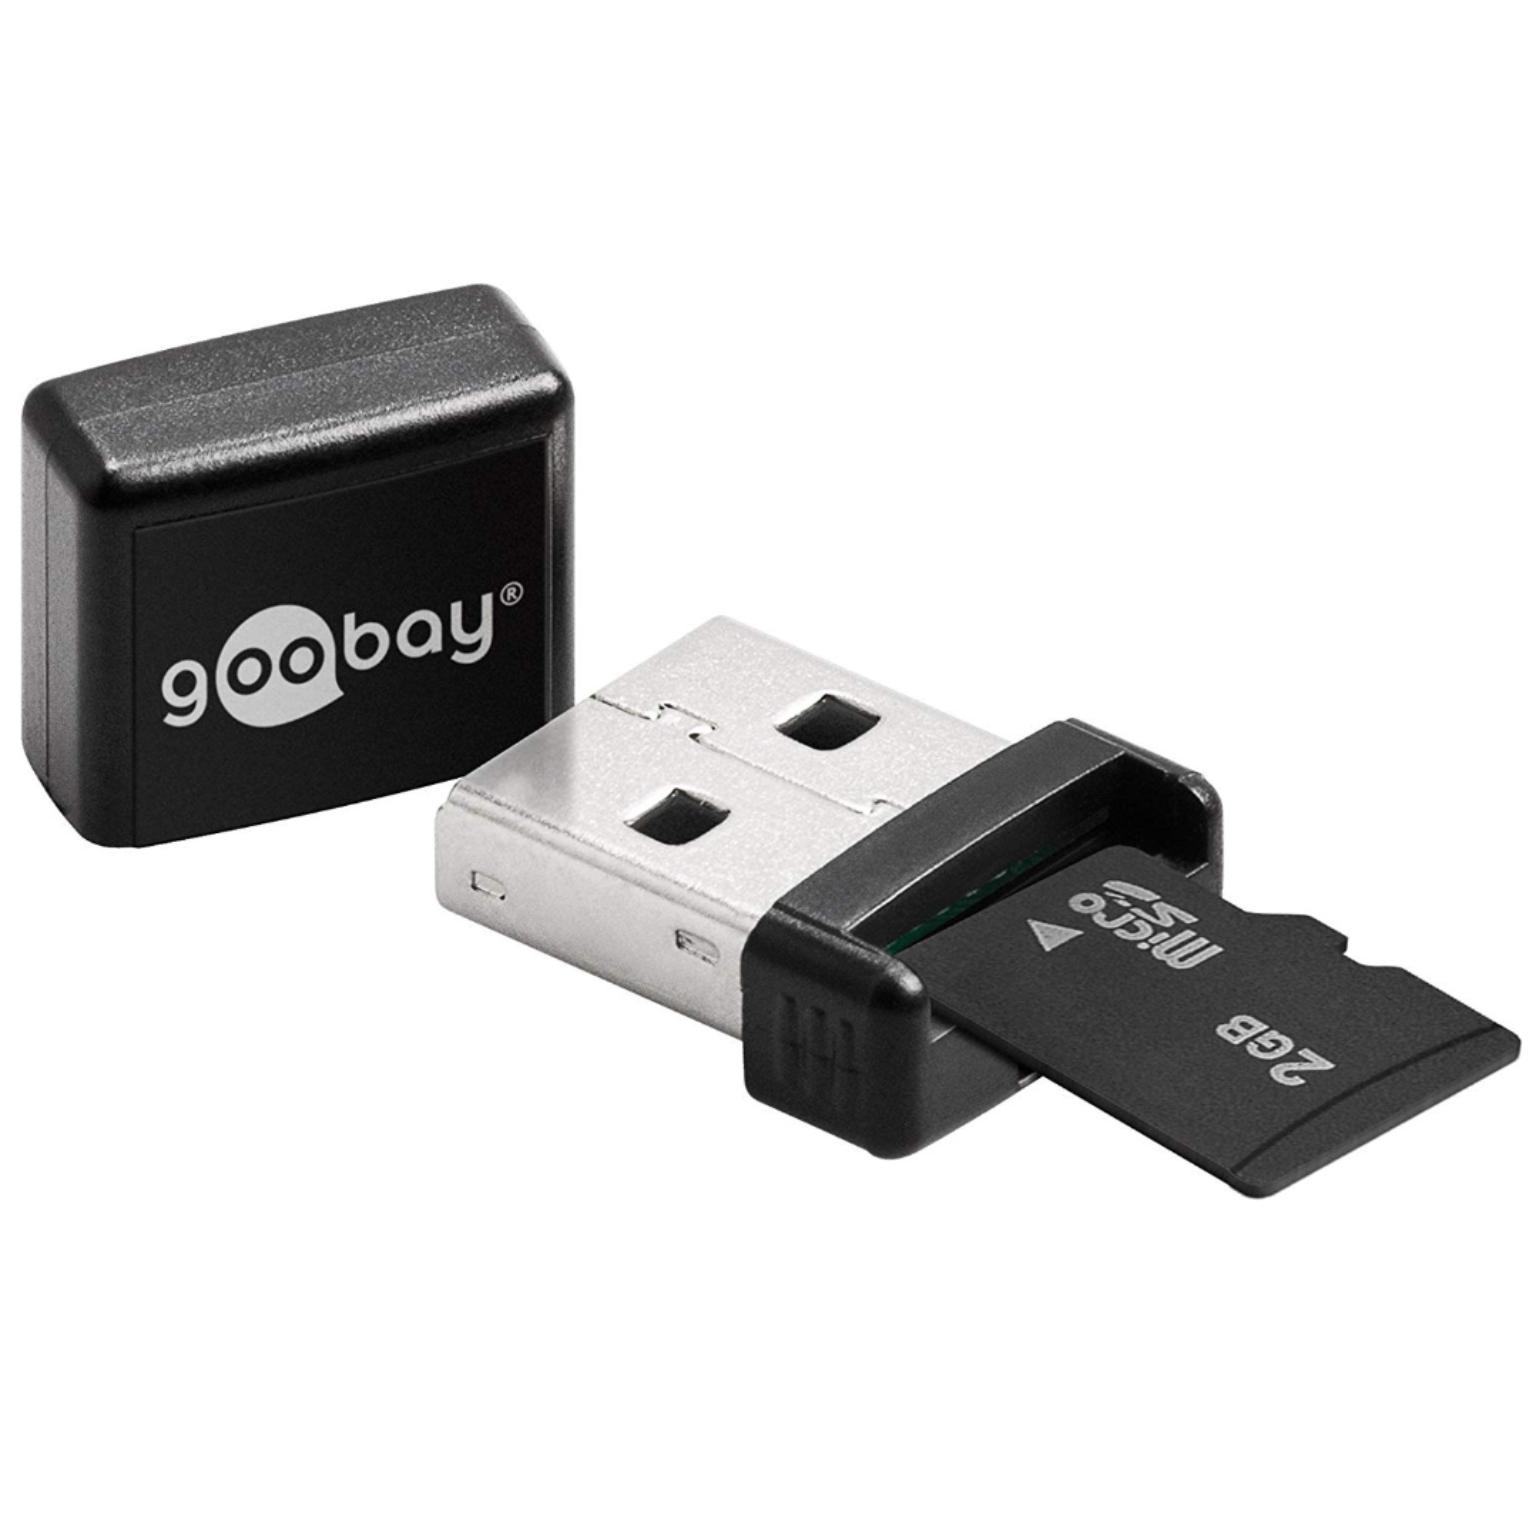 USB 2.0 kaartlezer - Goobay